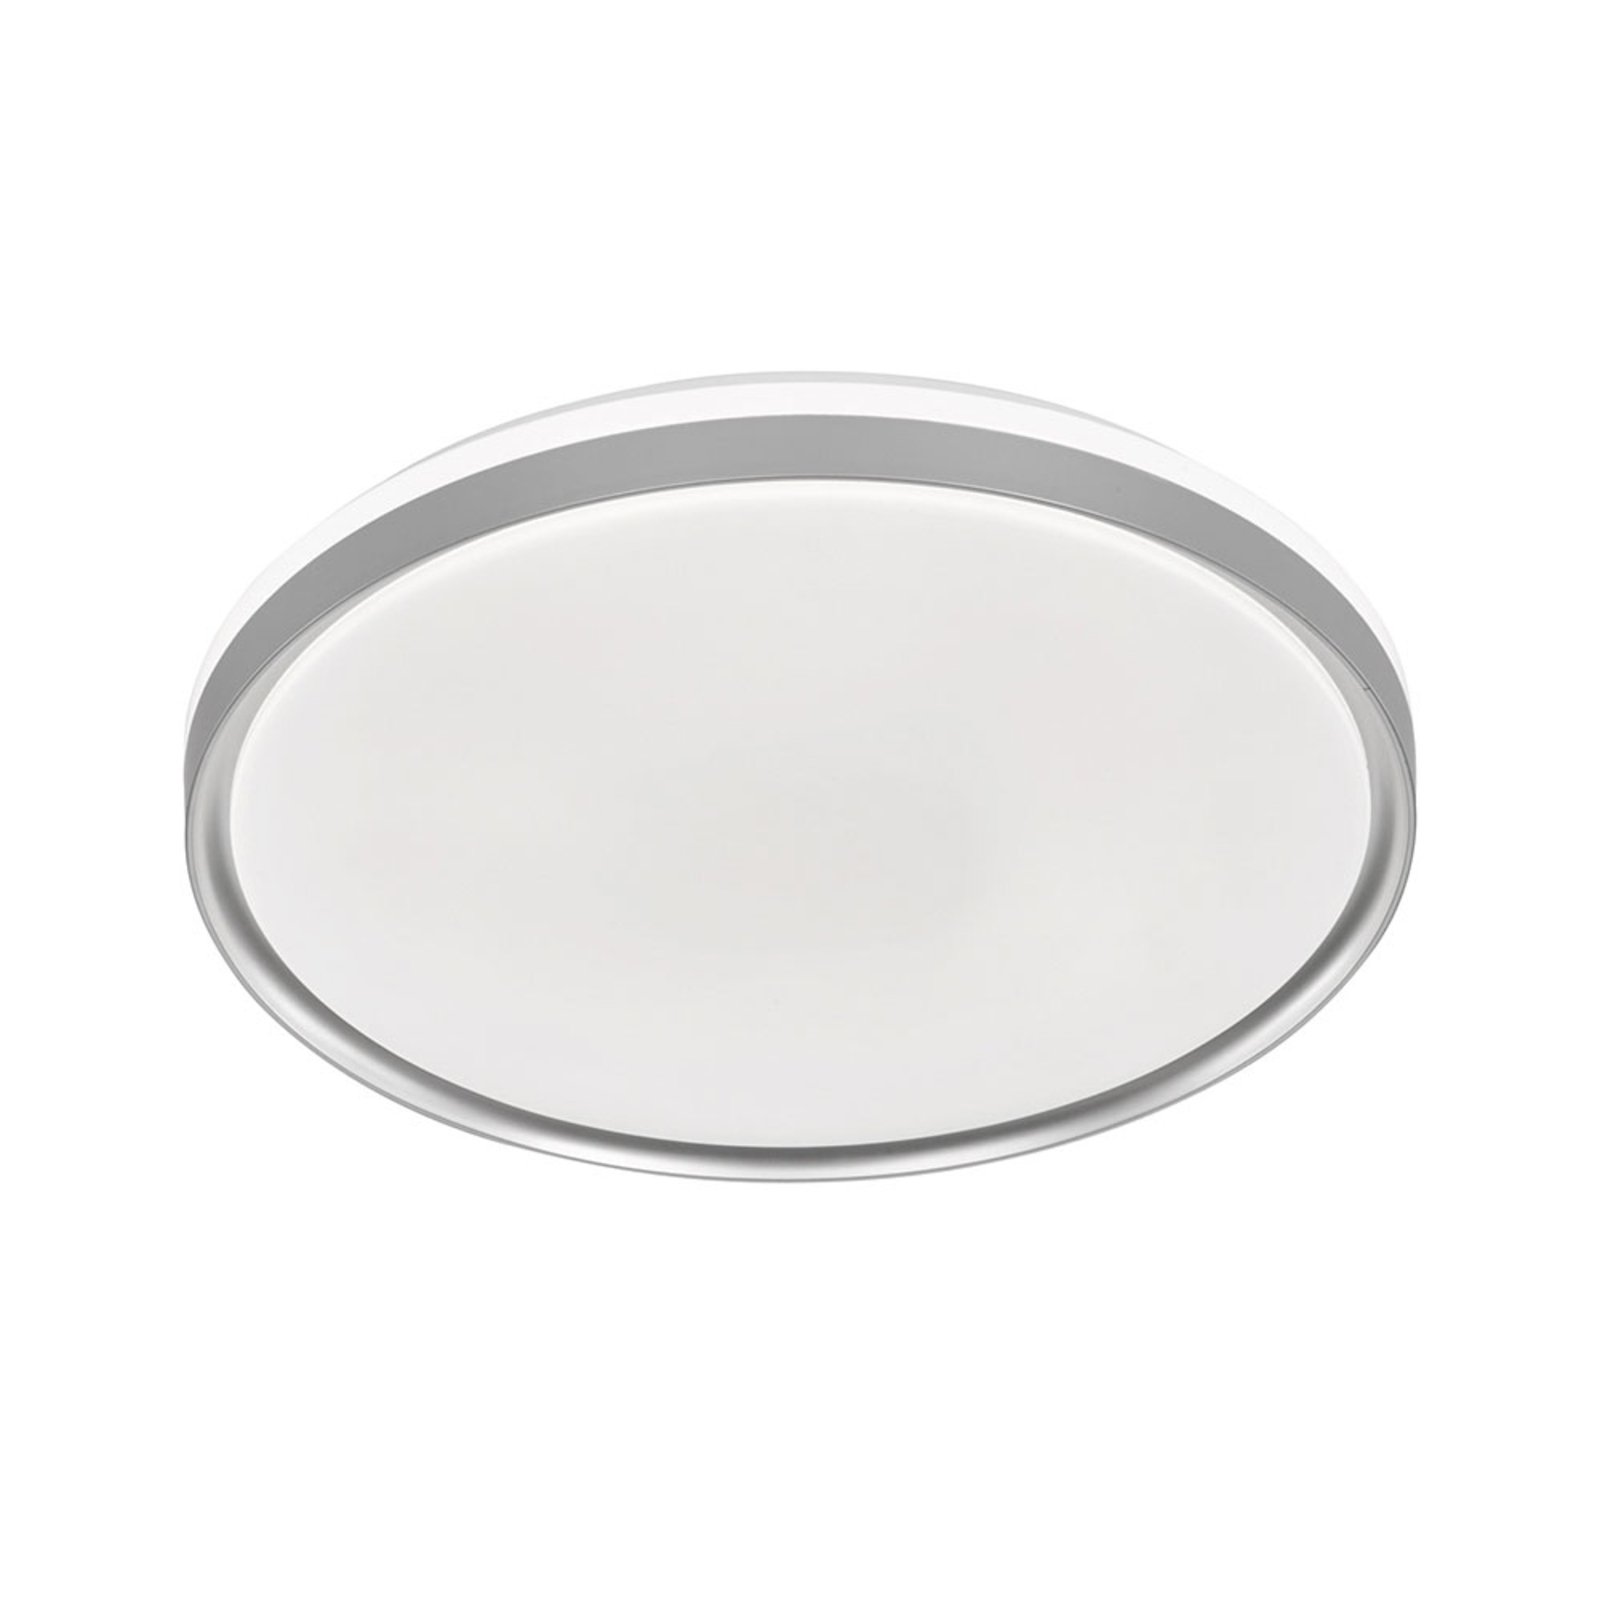 Jaso BS LED ceiling light, Ø 39 cm, silver